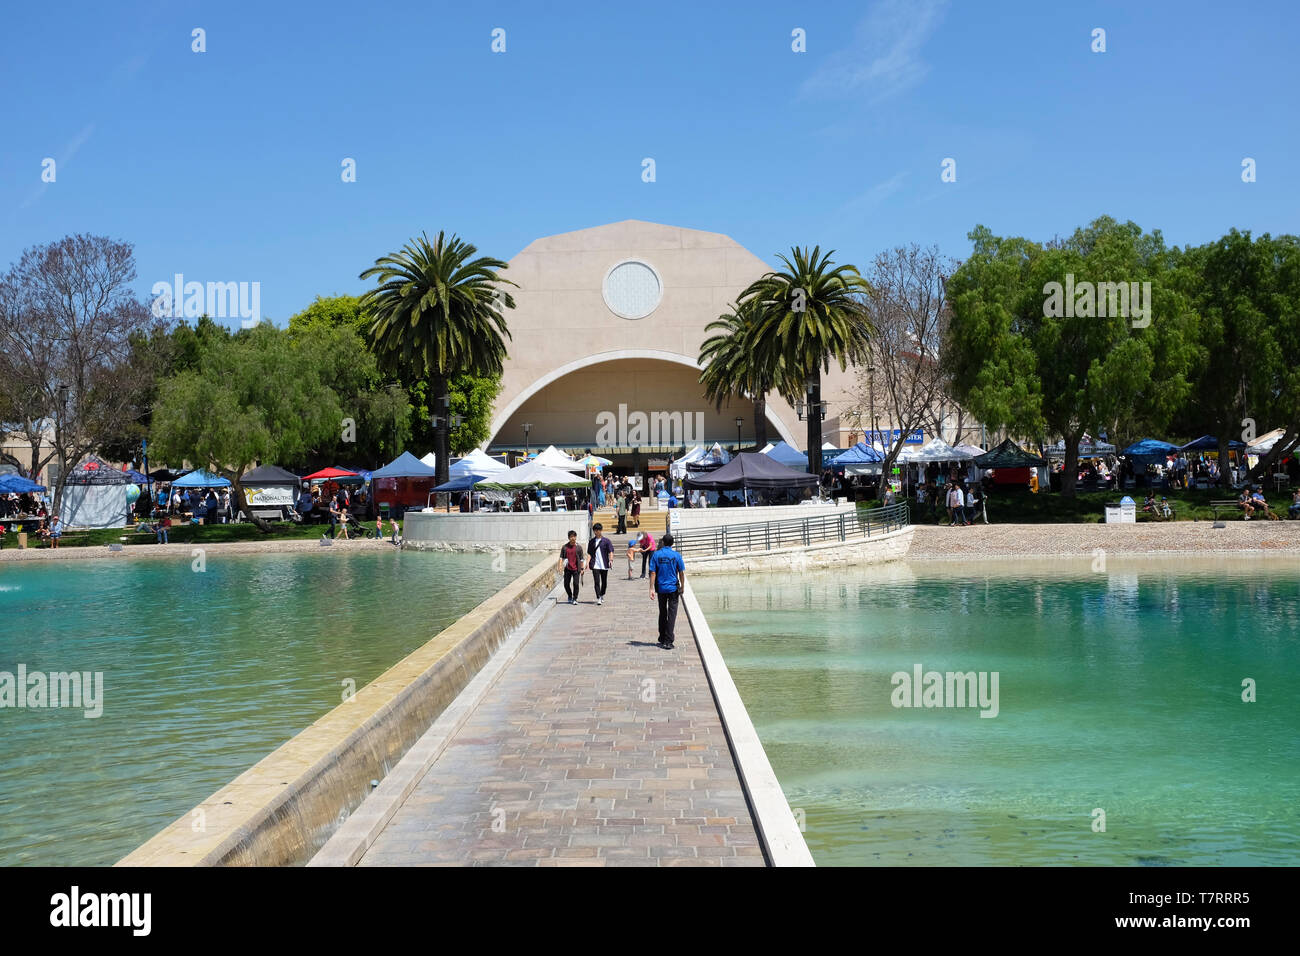 ALISO Viejo, Kalifornien, 4. Mai 2019: Gehweg halbierend Frieden See an der Soka Universität während der 18. jährlichen Internationalen Festivals. Stockfoto